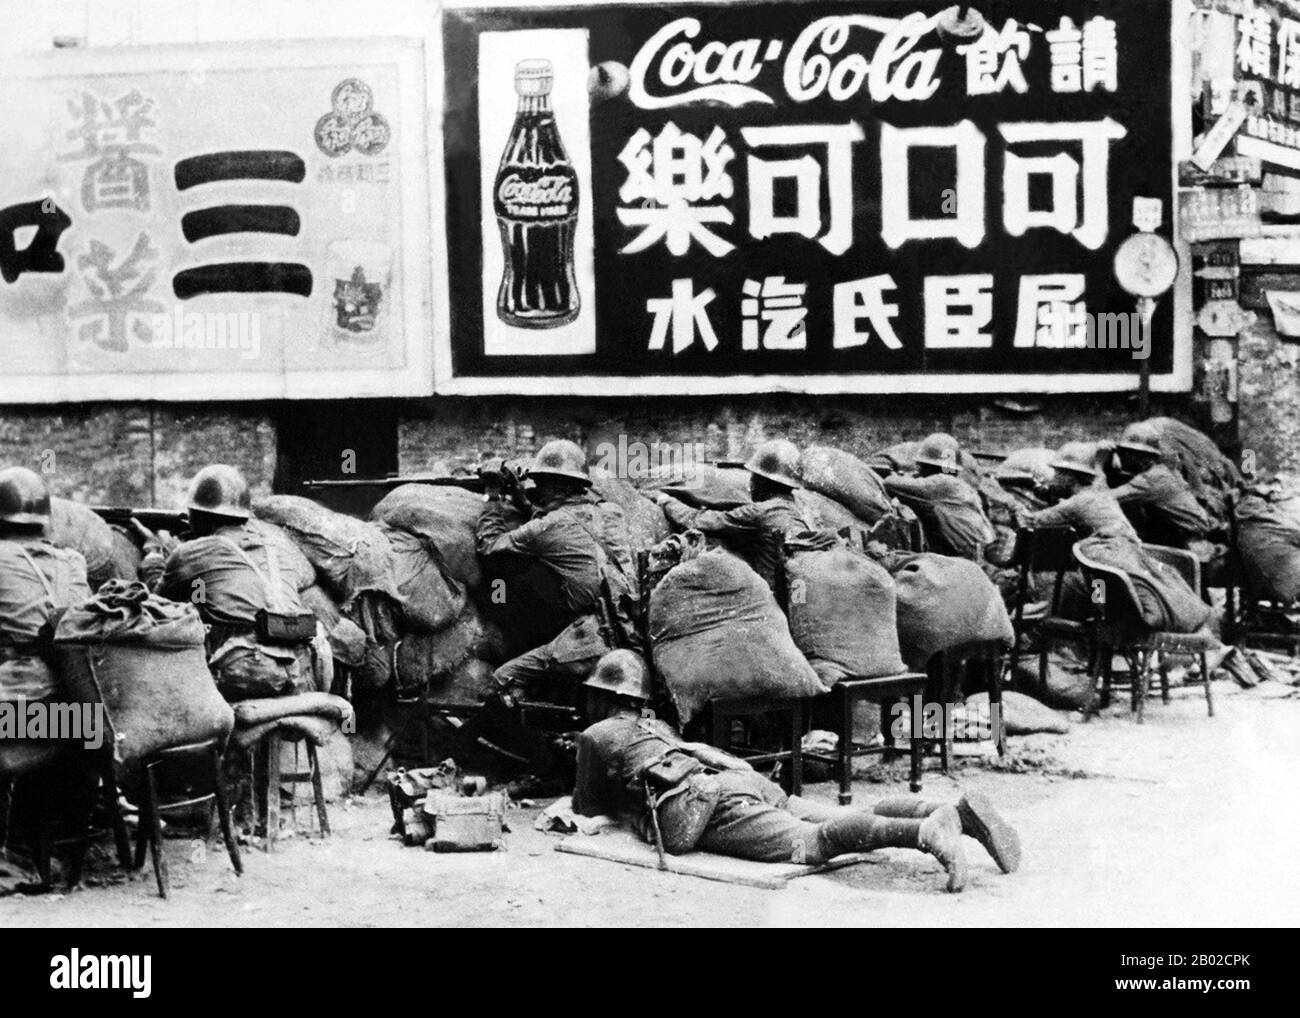 Die Schlacht von Shanghai (1937), auf Chinesisch als Schlacht von Songhu bekannt, war die erste der zweiundzwanzig großen Engagements, die zwischen der nationalen Revolutionären Armee der Republik China und der Kaiserlich japanischen Armee des Kaiserreichs Japan während des Zweiten Chinesisch-Japanischen Krieges ausgetragen wurden. Es war eine der größten und blutigsten Schlachten des gesamten Krieges. Stockfoto